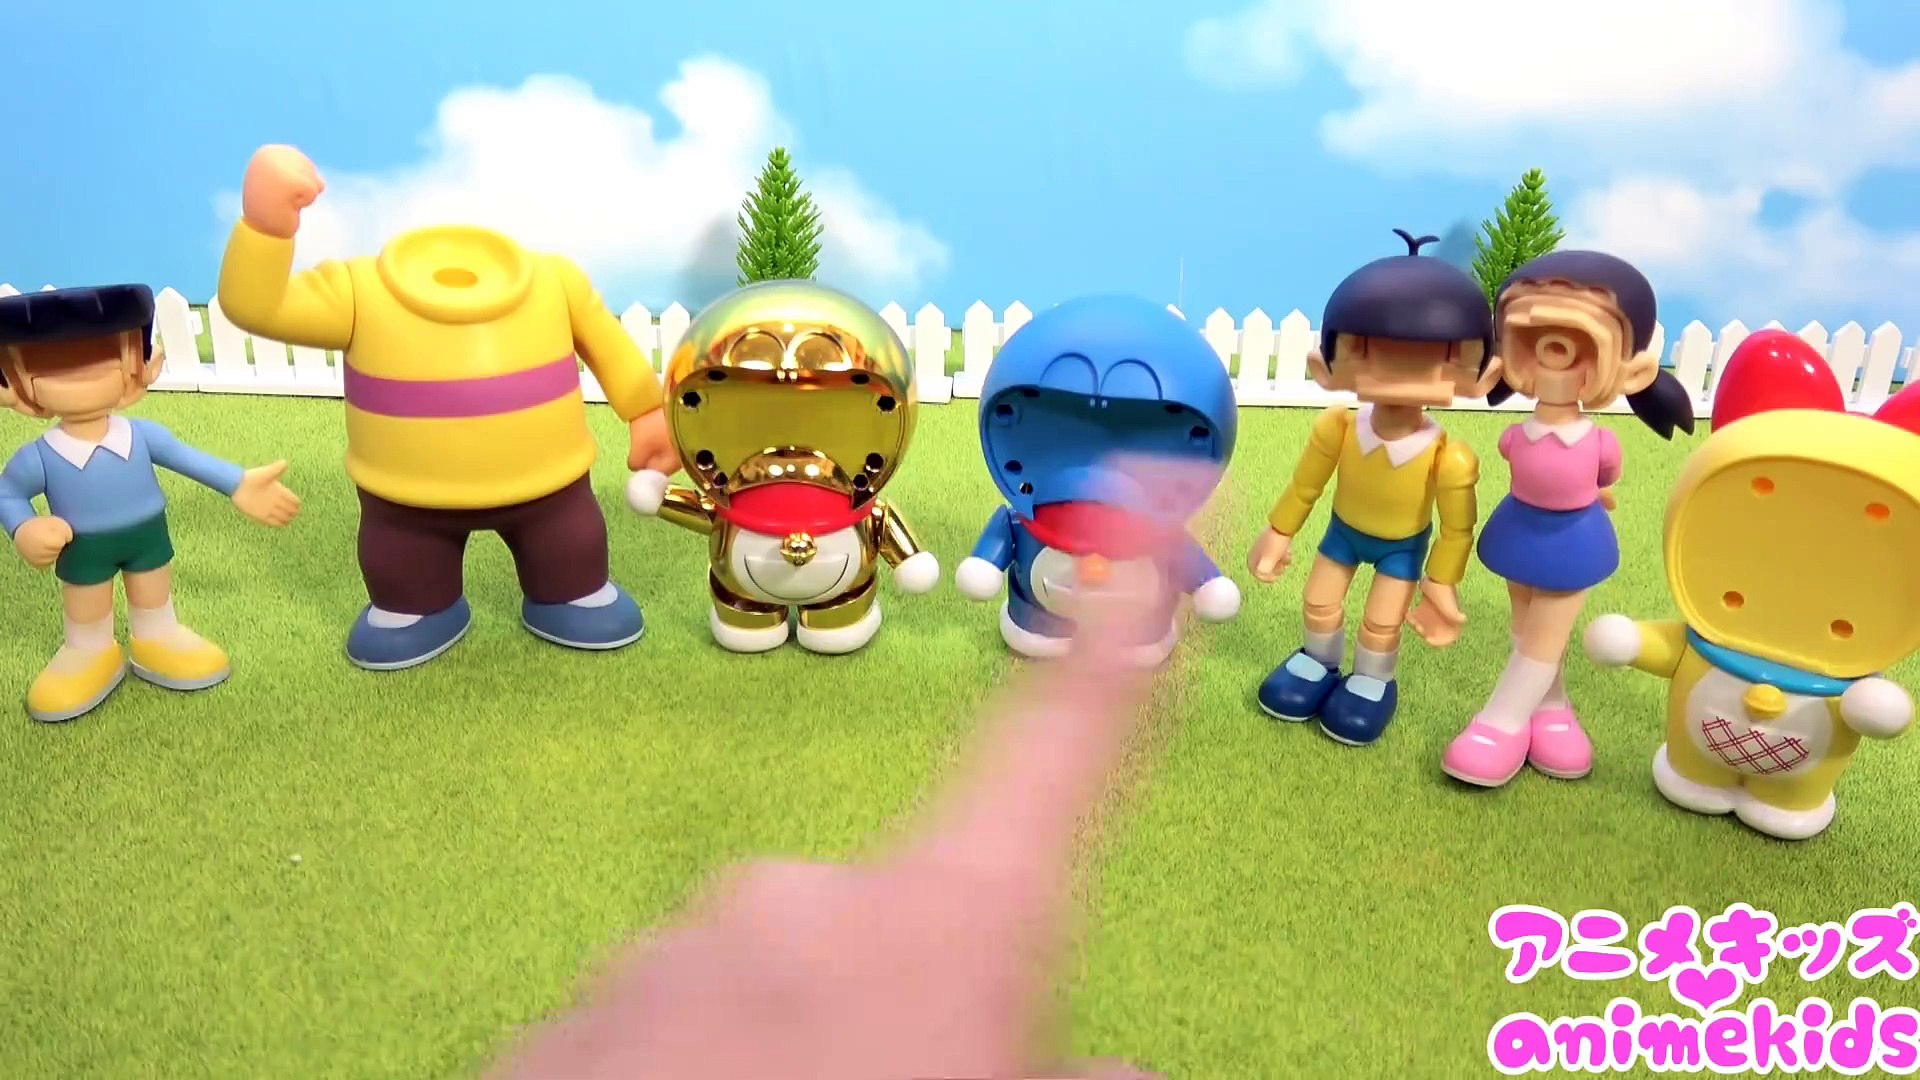 ドラえもん おもちゃ どの顔かな ドラえもん フィギュア 黄金 ネコ型ロボット Animekids アニメキッズ Animation Doraemon Toy 動画 Dailymotion